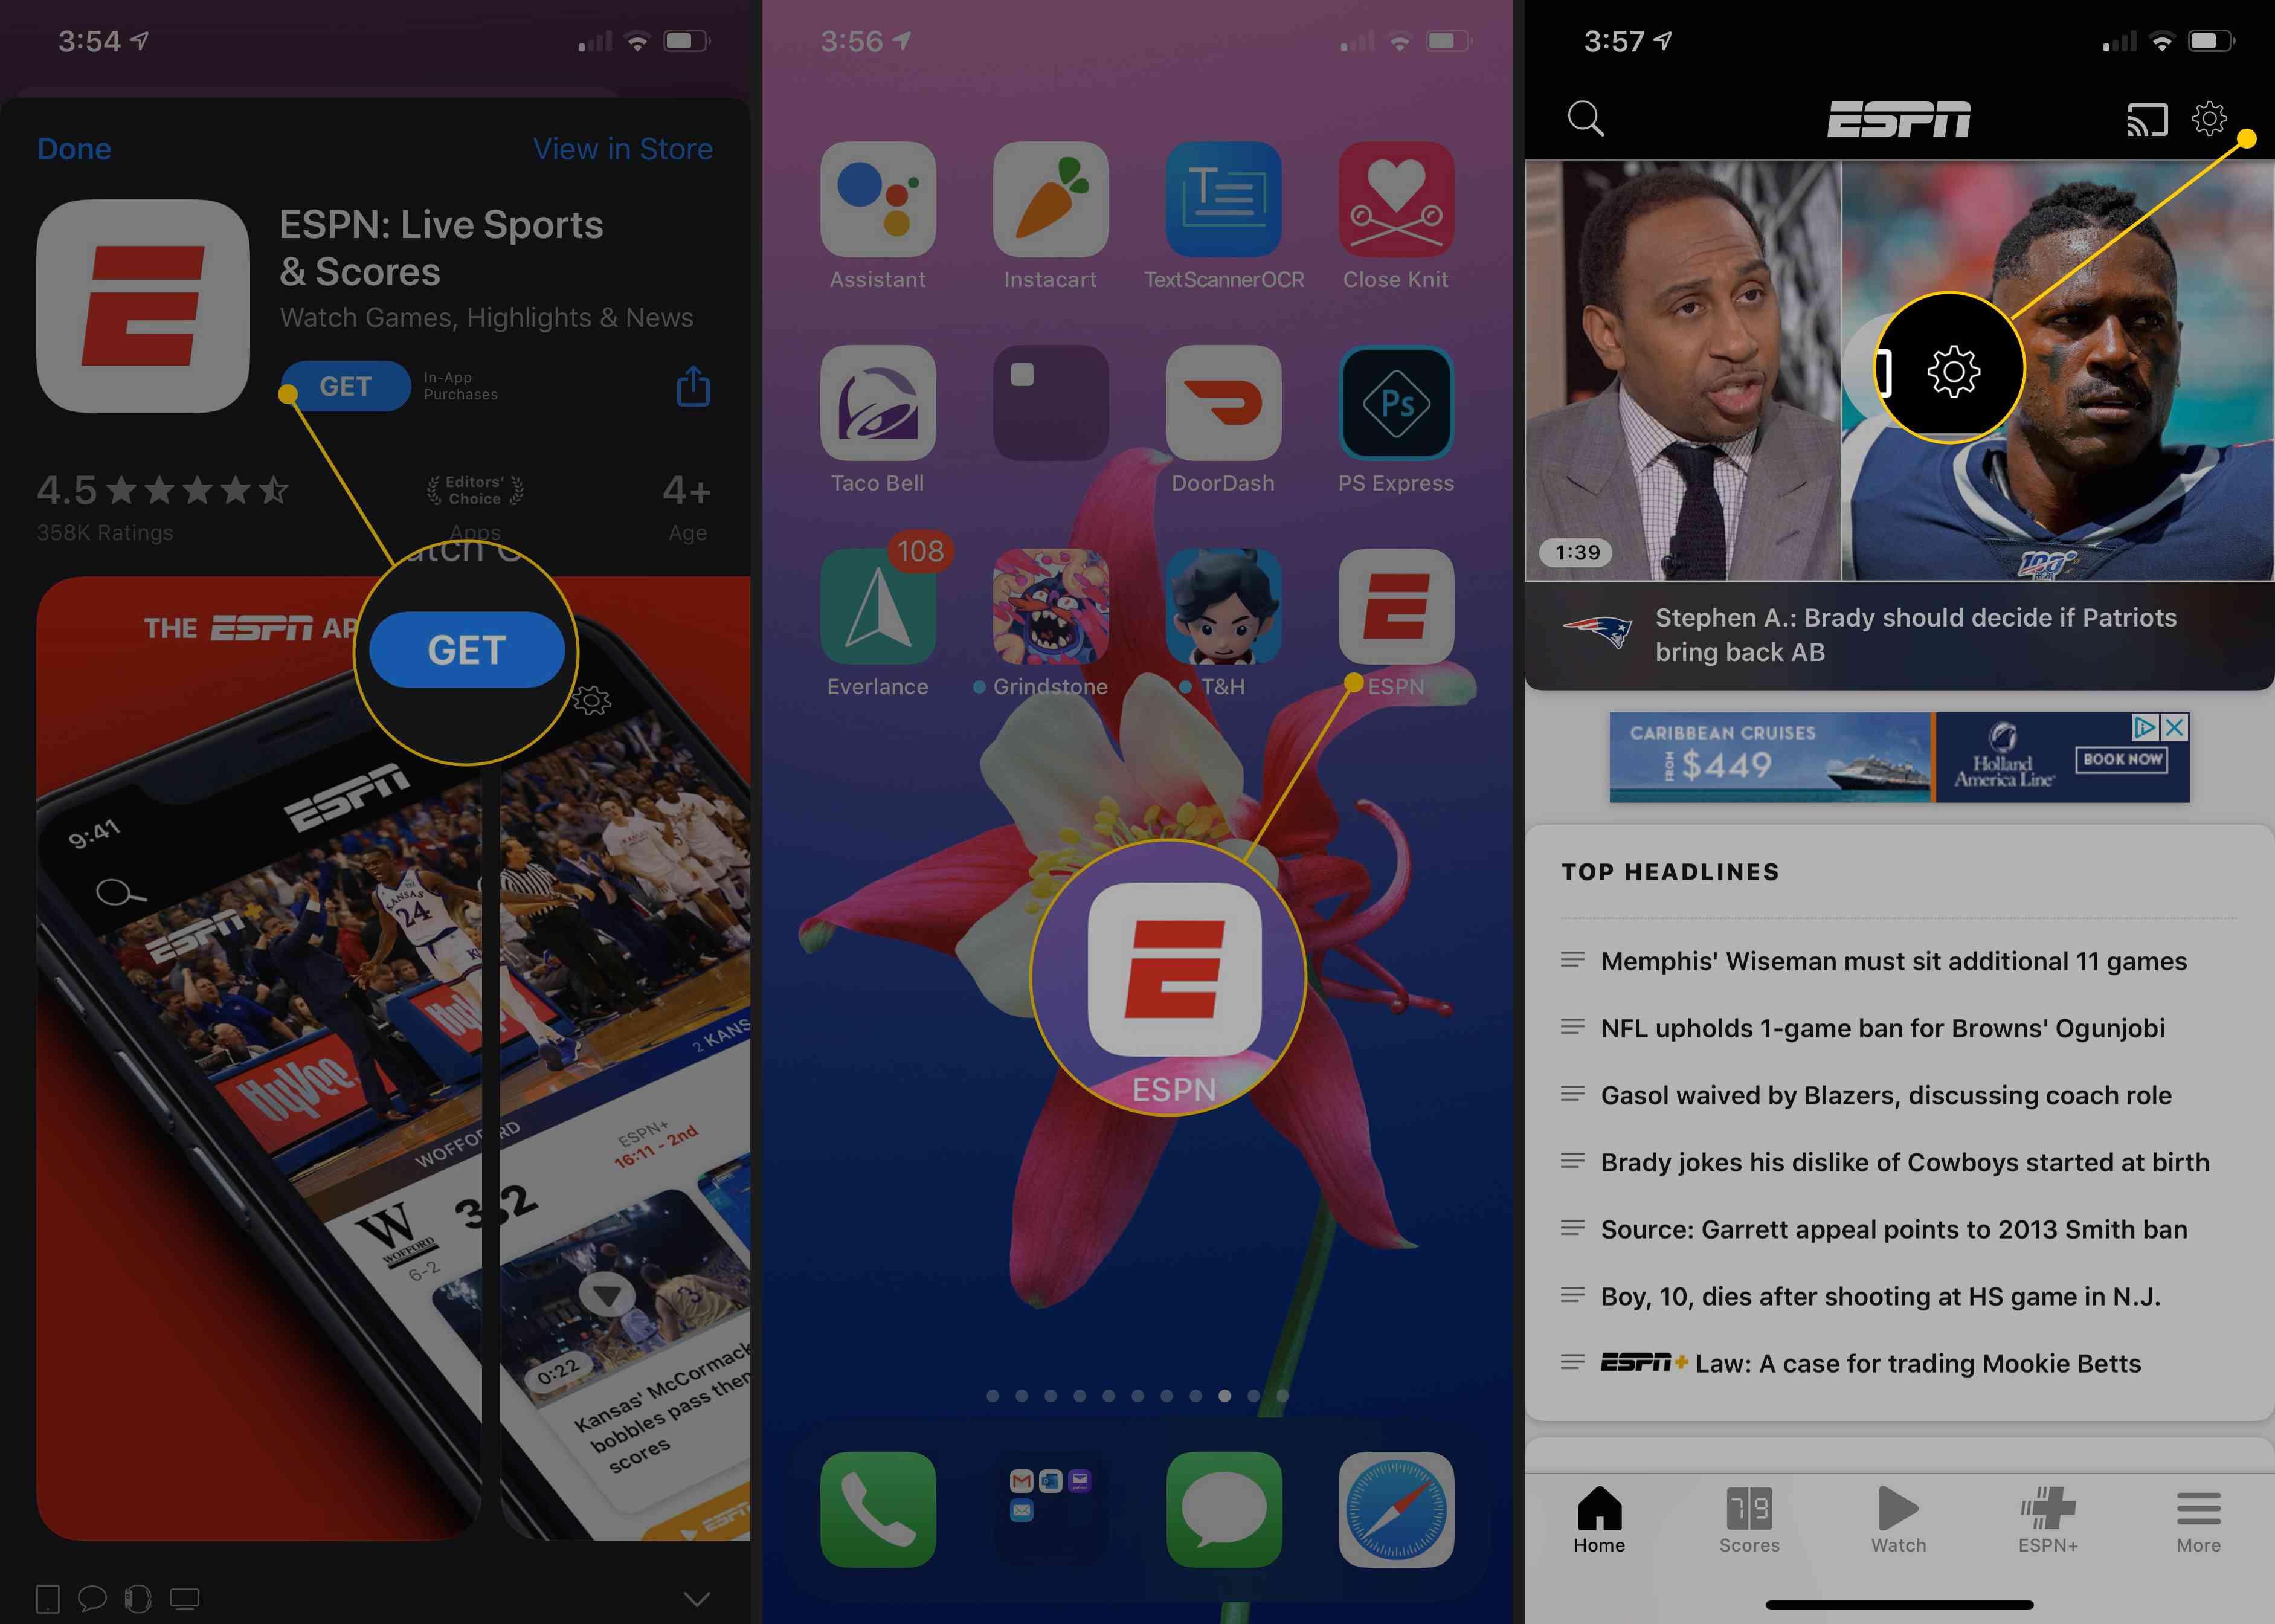 ESPN: Live Sports & Scores в App Store, піктограма ESPN на головному екрані, піктограма Gear